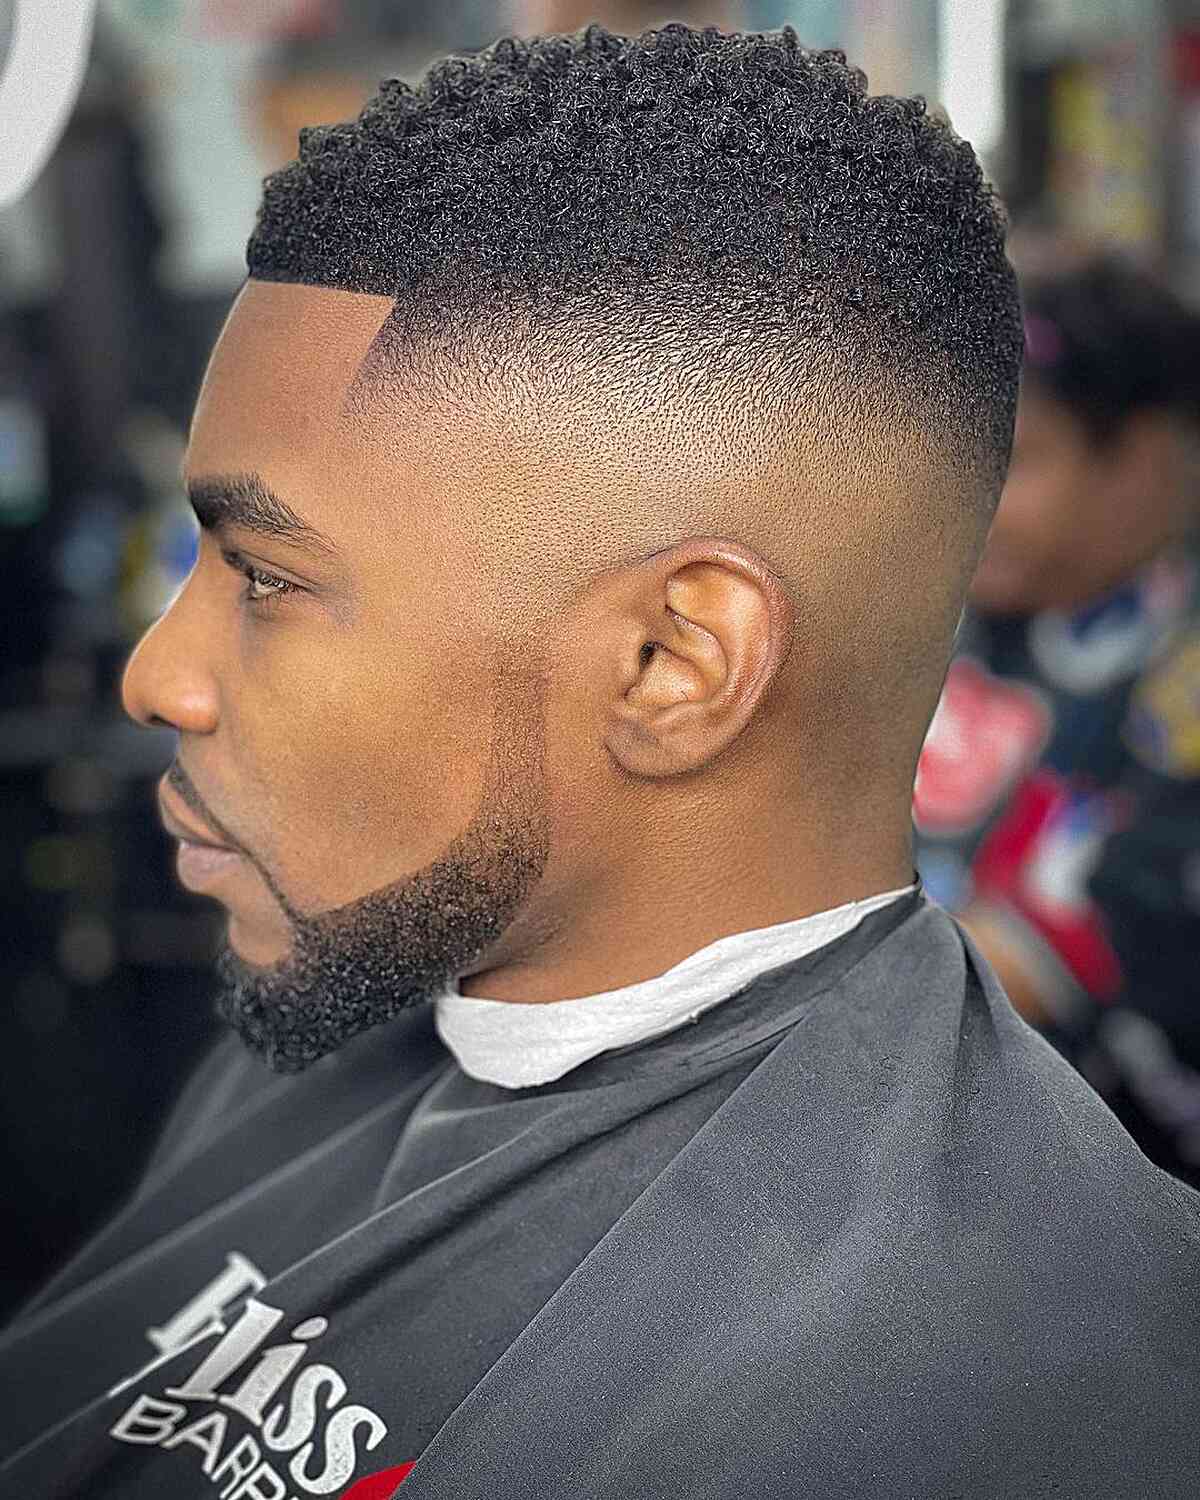 Black men's boosie fade haircut